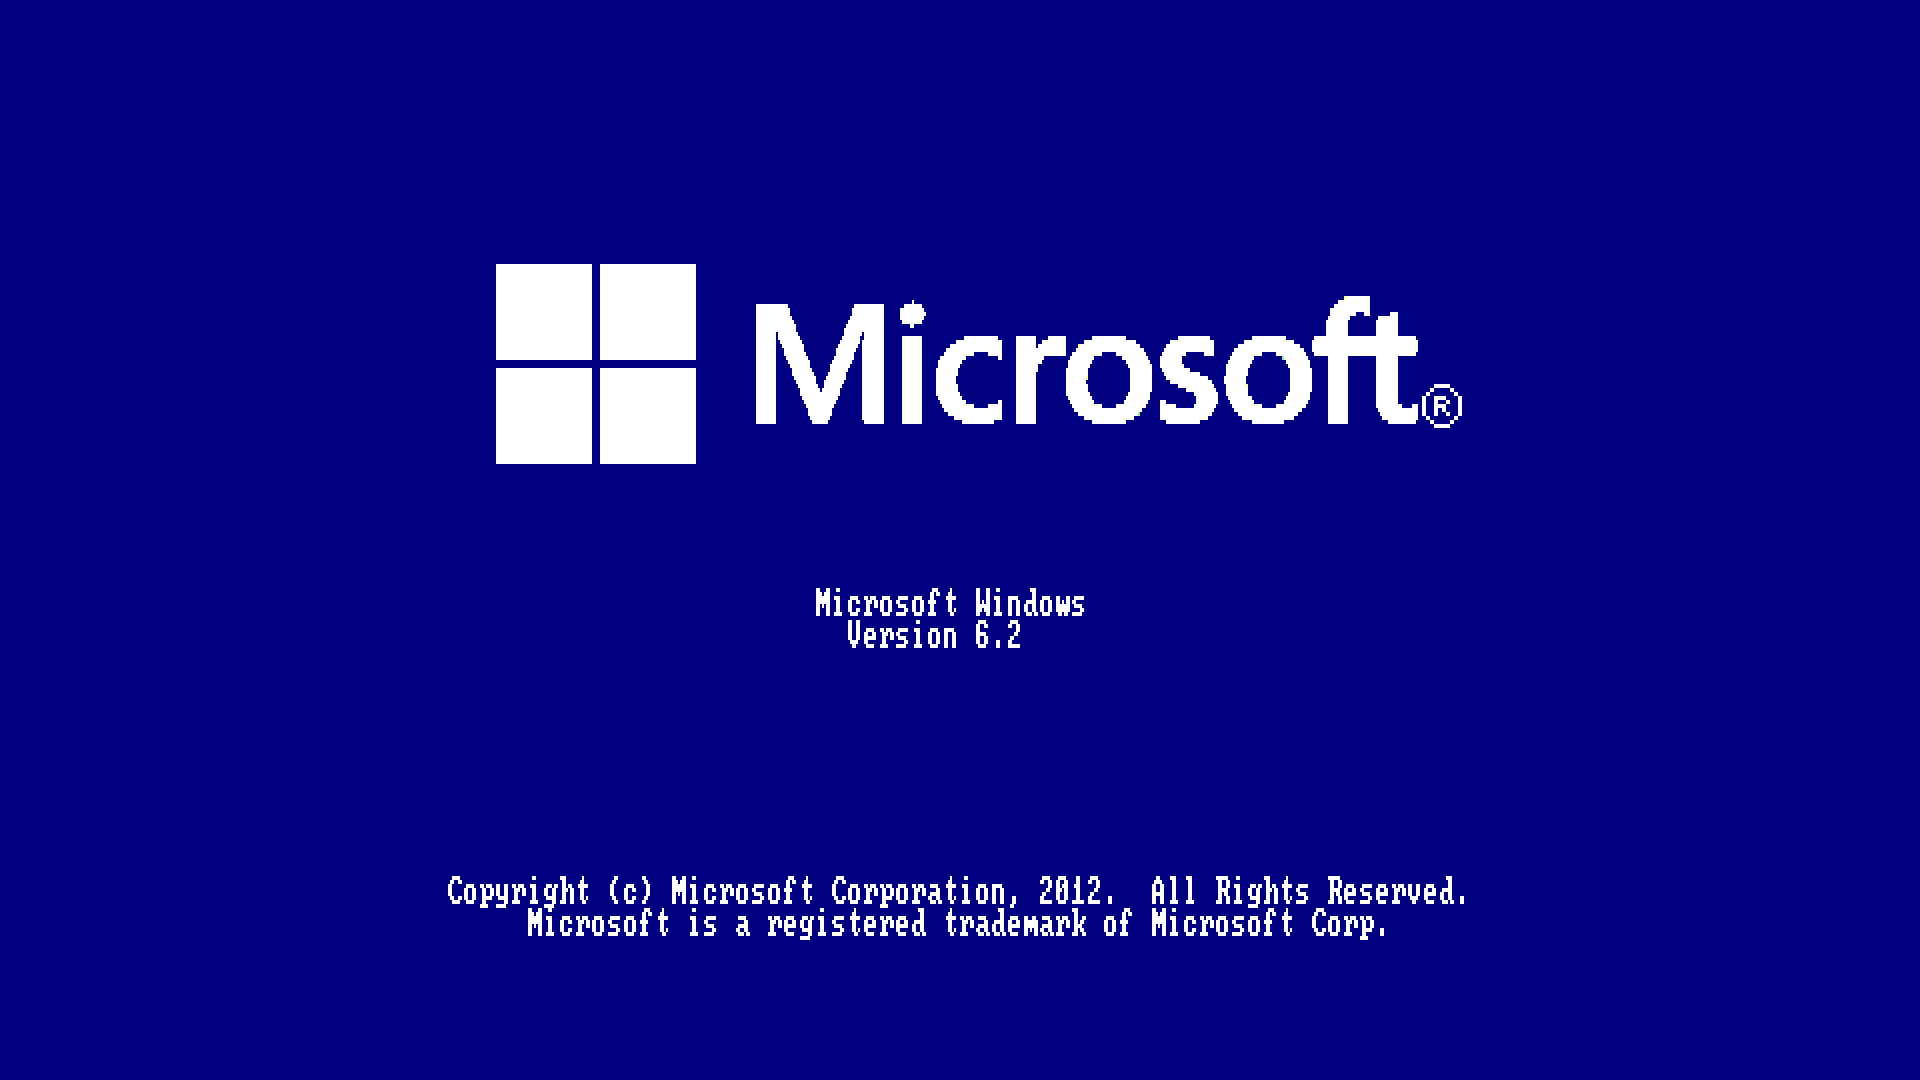 Windows 95 Plus Wallpaper Windows 95 wallpaper windows